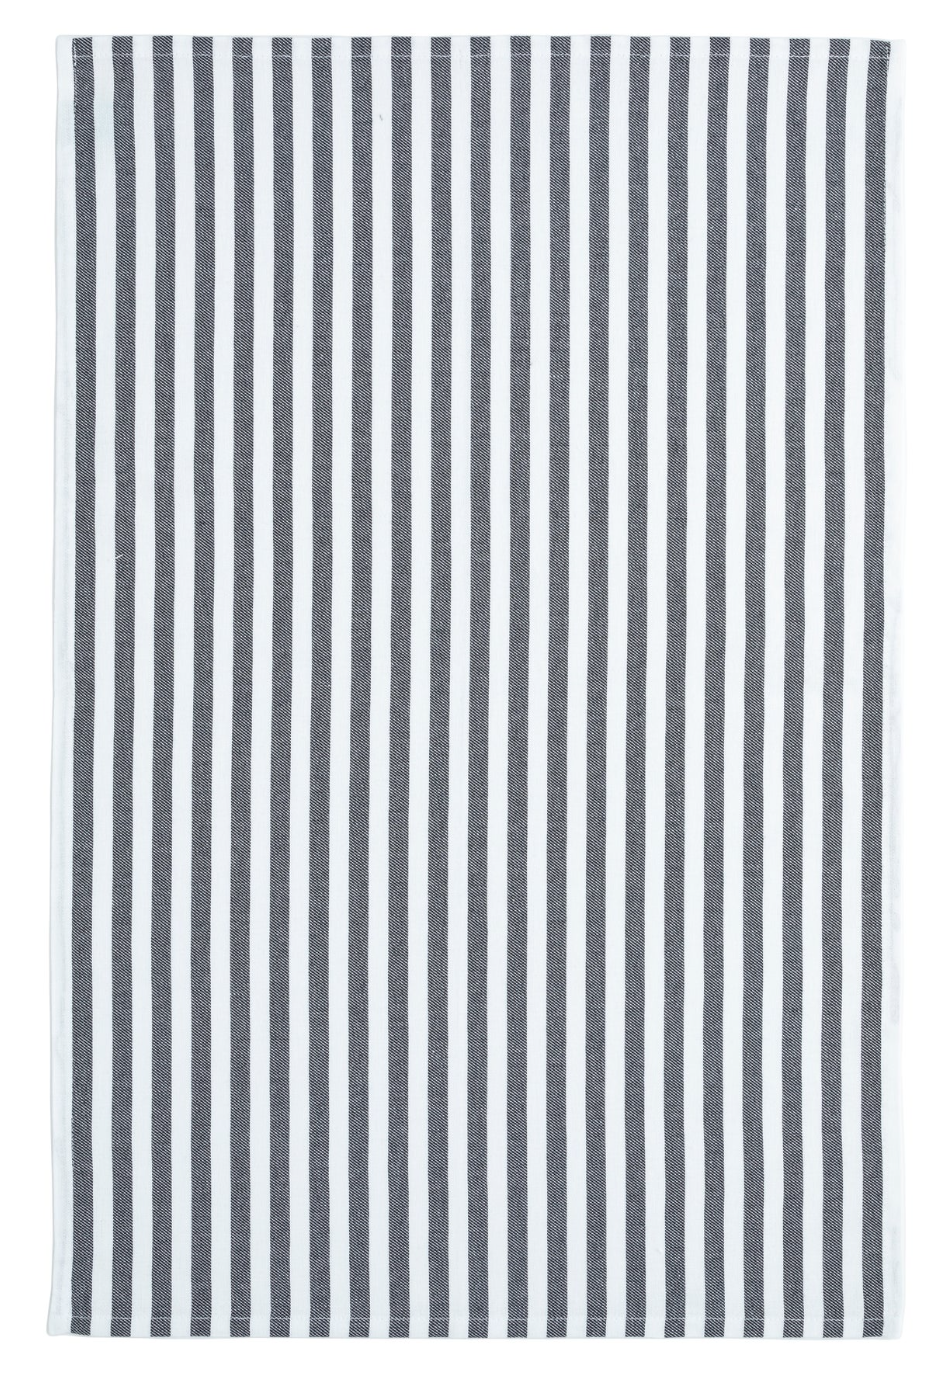 Casafina Black Stripes Set of 2